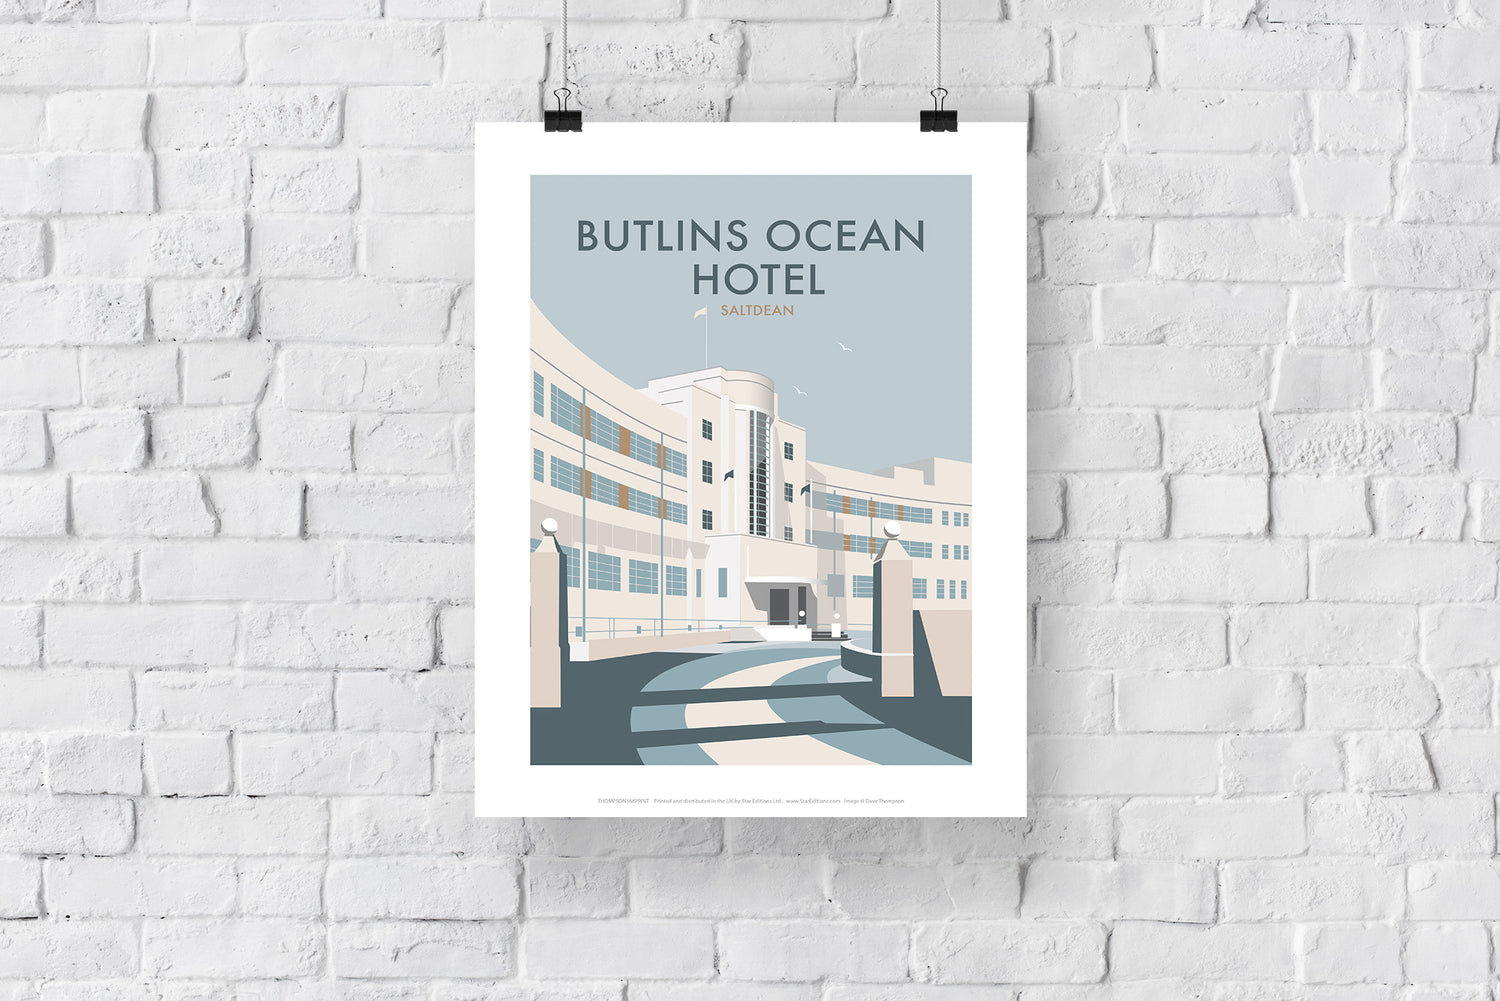 Butlins Ocean Hotel, Saltdean - Art Print